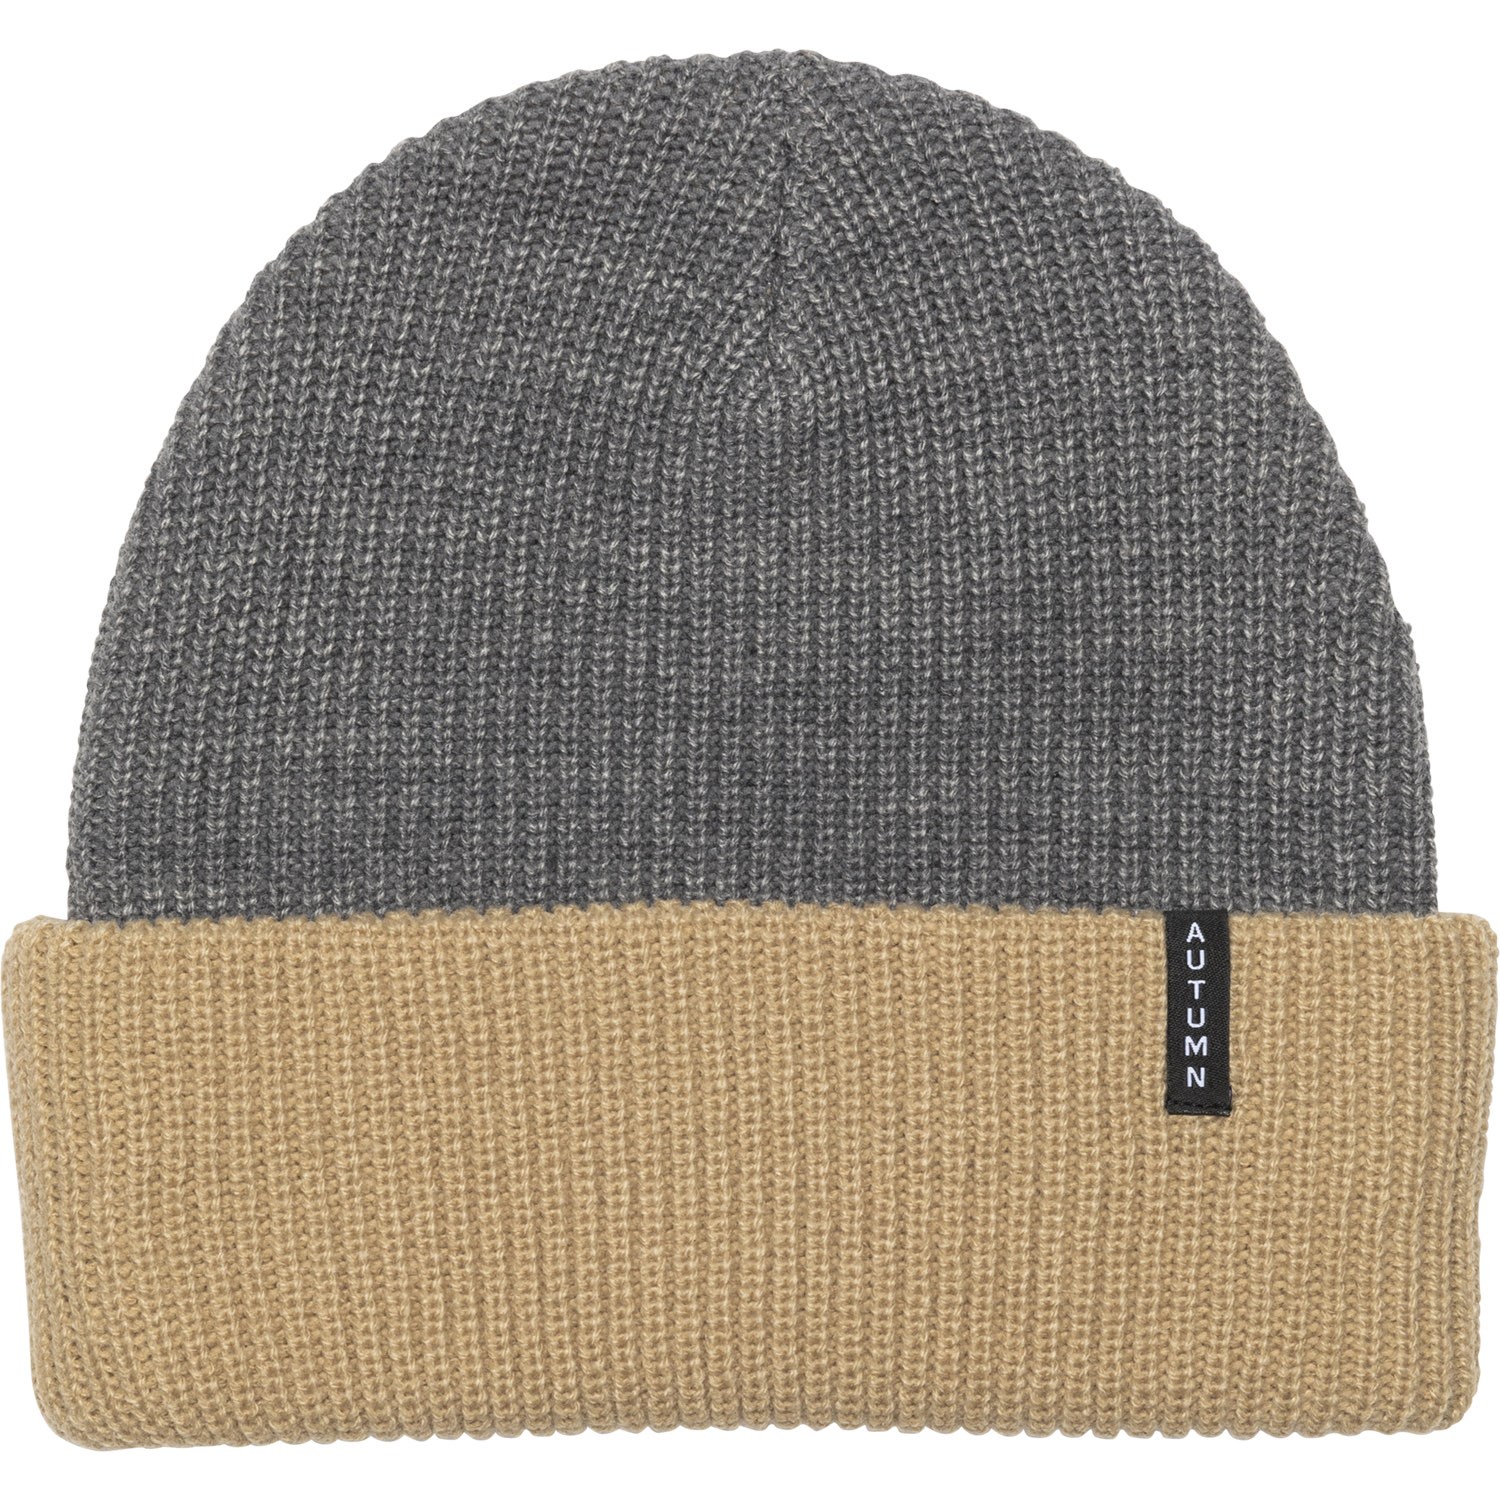 Шапка - Бини Autumn, серый шапка бини a store размер универсальный серый